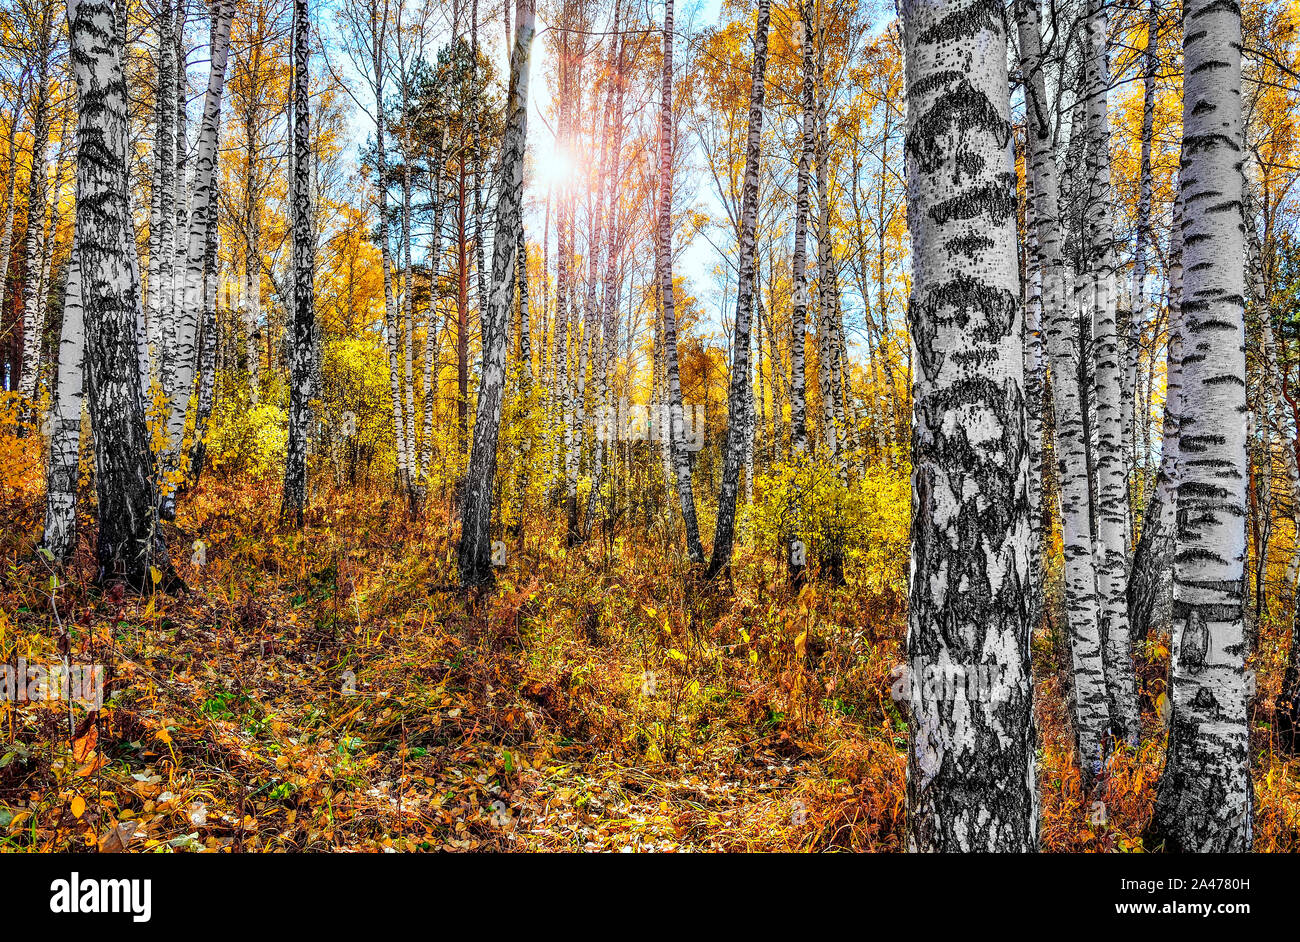 Goldene Herbst Landschaft im Birch Grove. Gelb und Orange gefärbten Blätter der Birken mit hellen, weißen Trunks an Sonnenlicht. Schönen farben von herbst Stockfoto